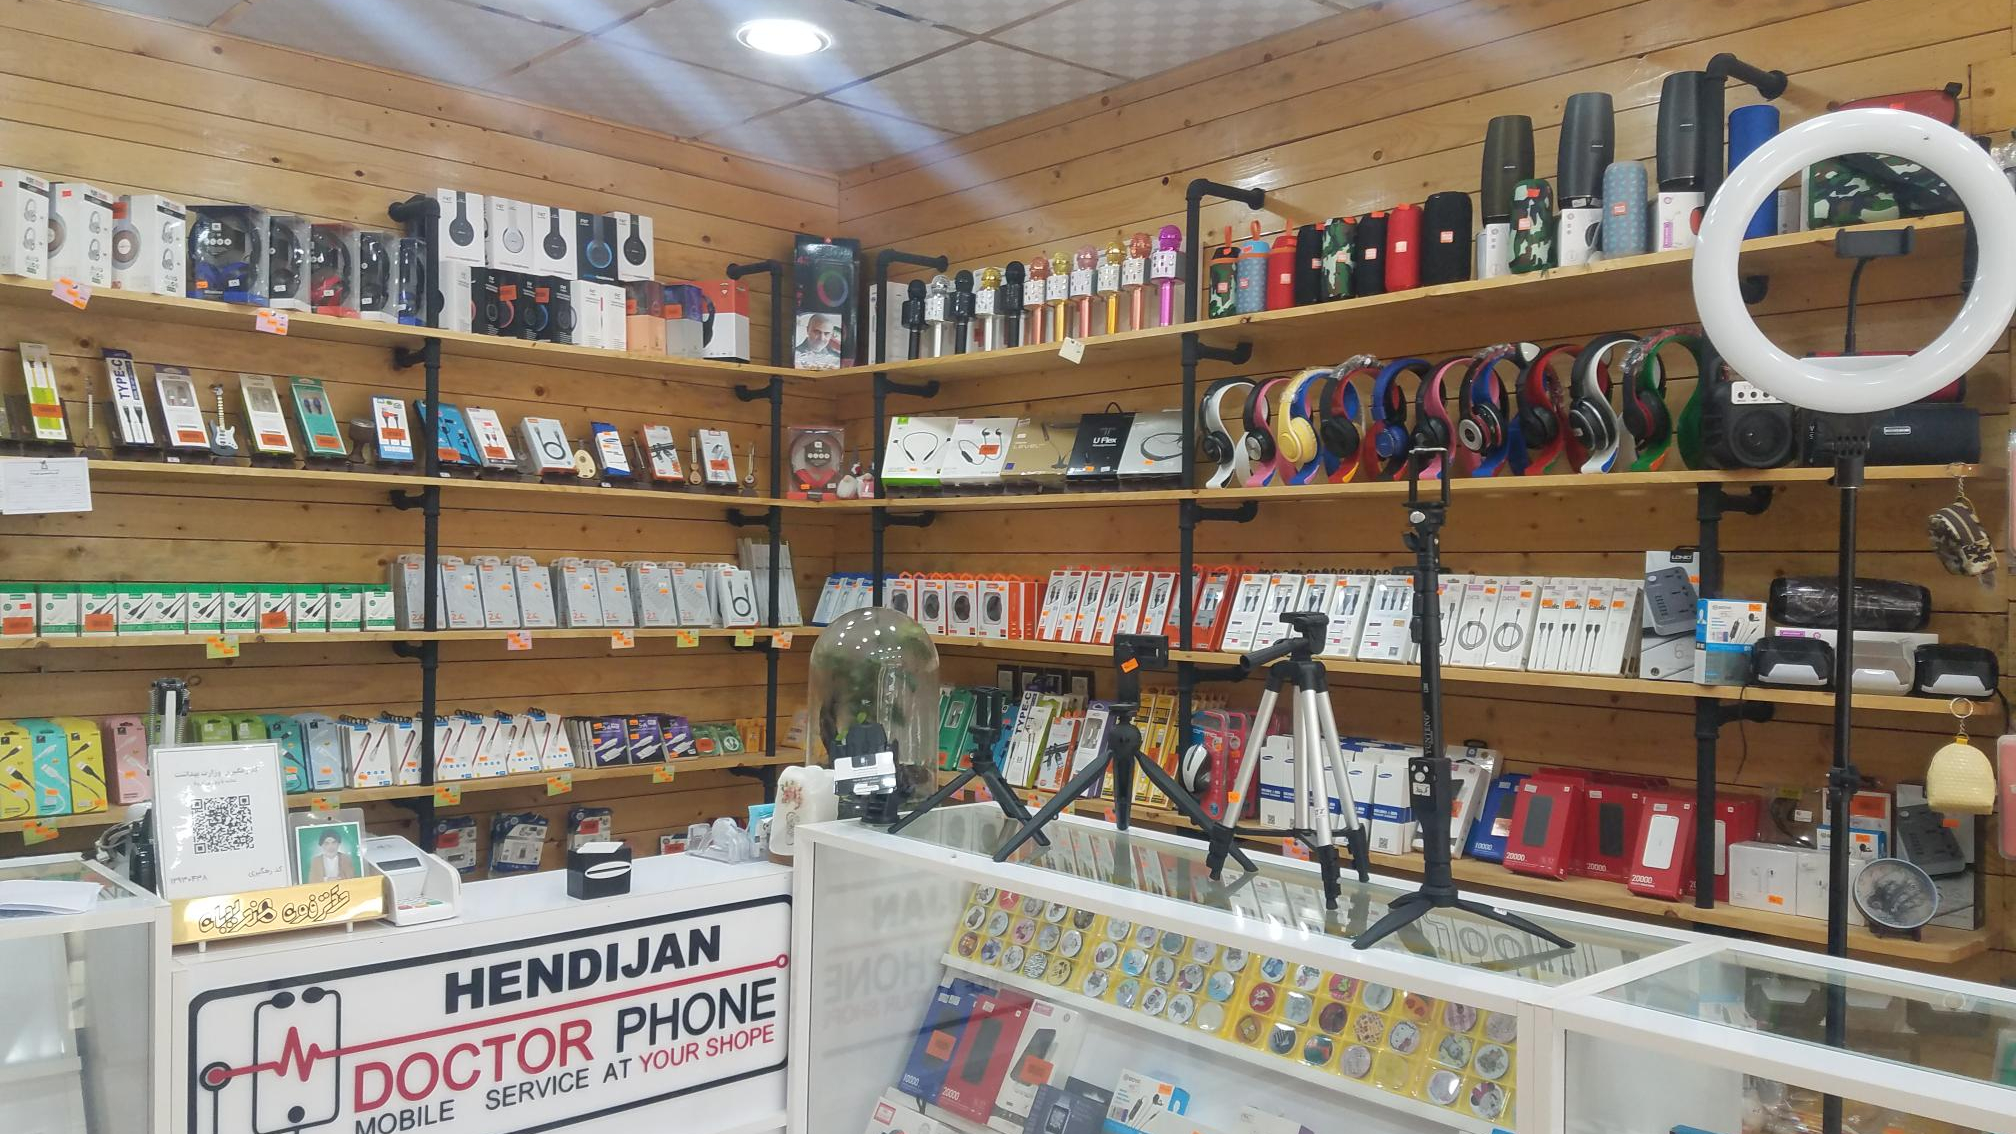 فروشگاه موبایل دکتر فون